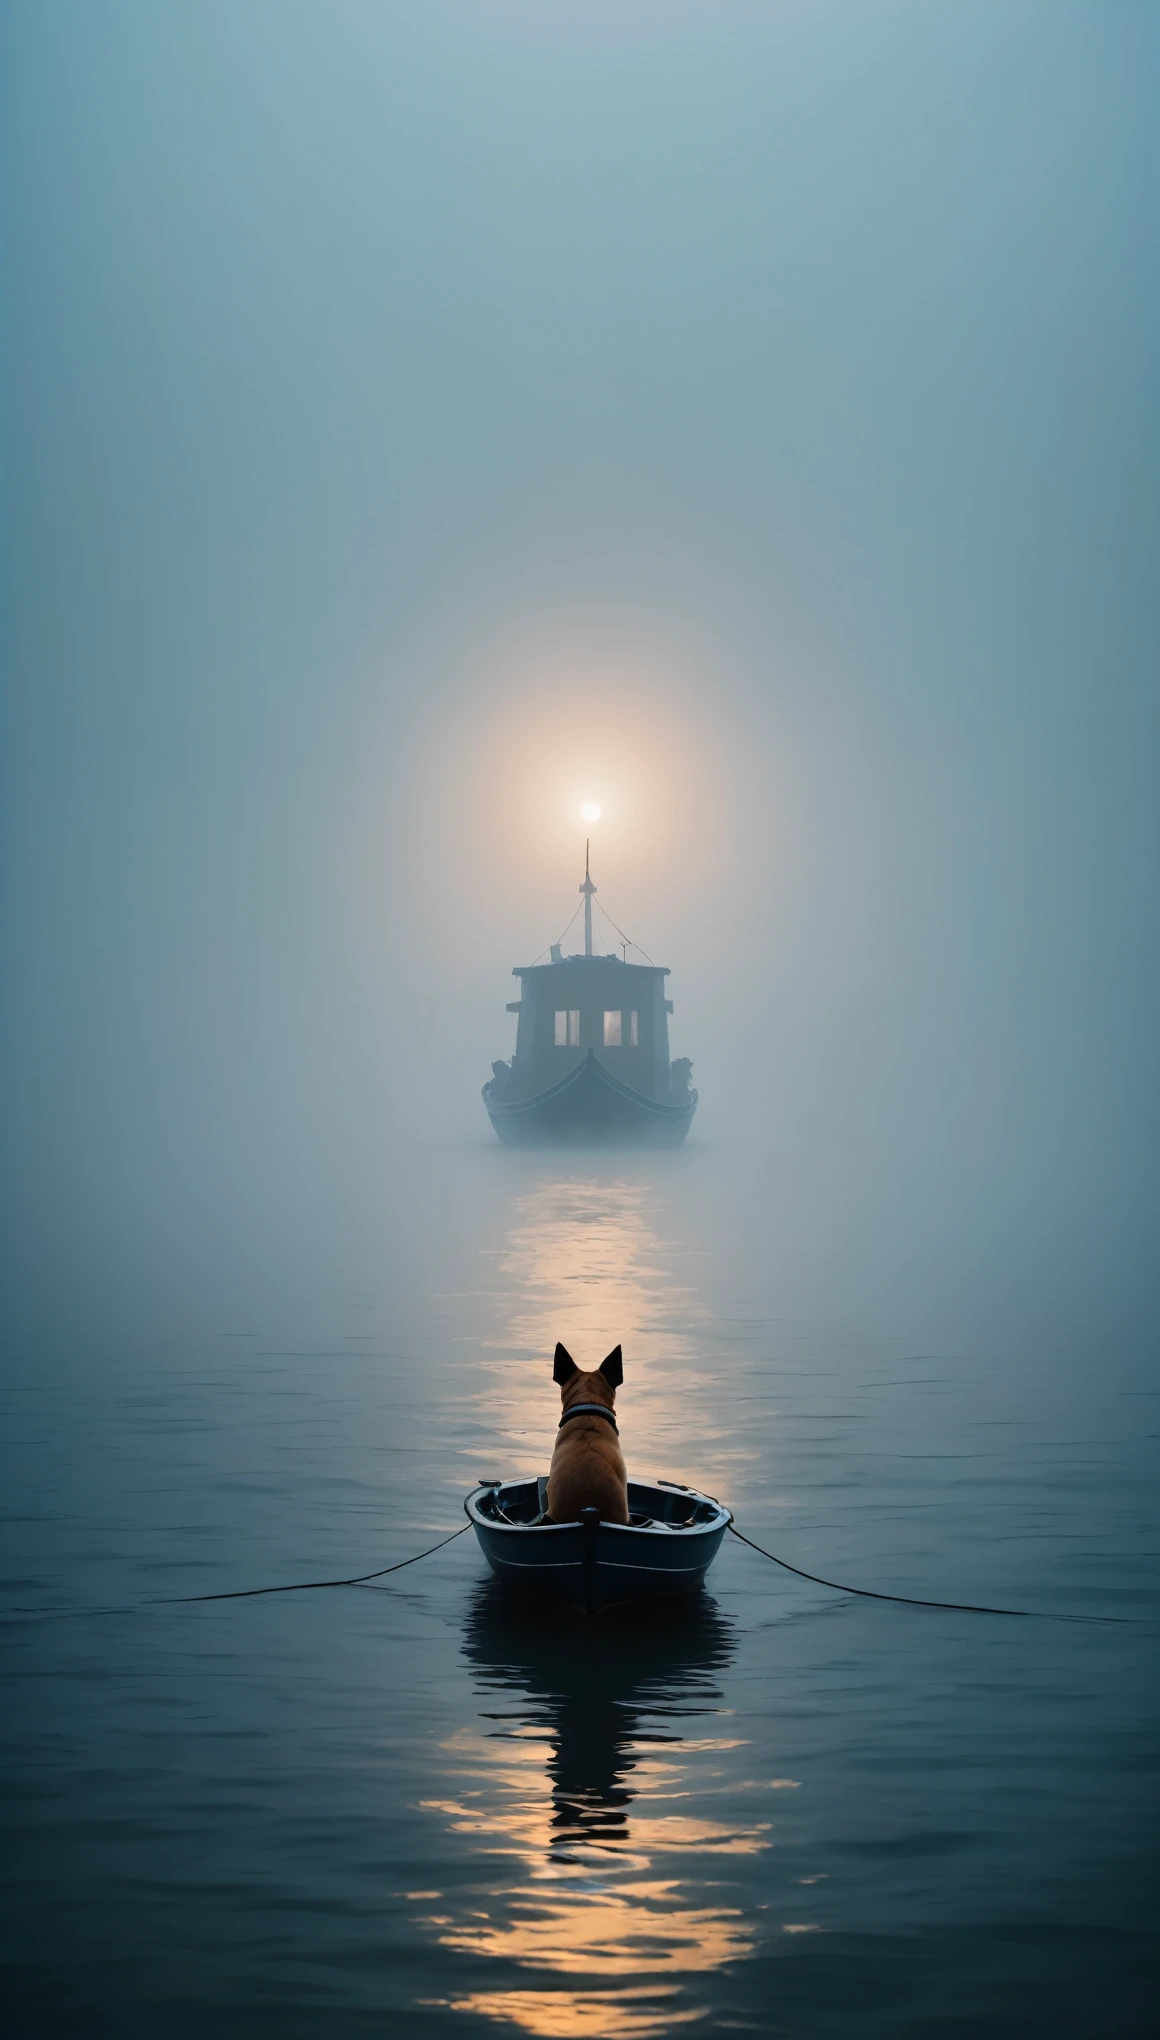 笼罩在浓雾笼罩的广阔海洋上，船上的小狗，费利西亚·西米恩和吉卜力工作室风格的极简主义摄影来到冒险，极简主义，美术，影院灯光，负空间，黑暗艺术，超现实主义